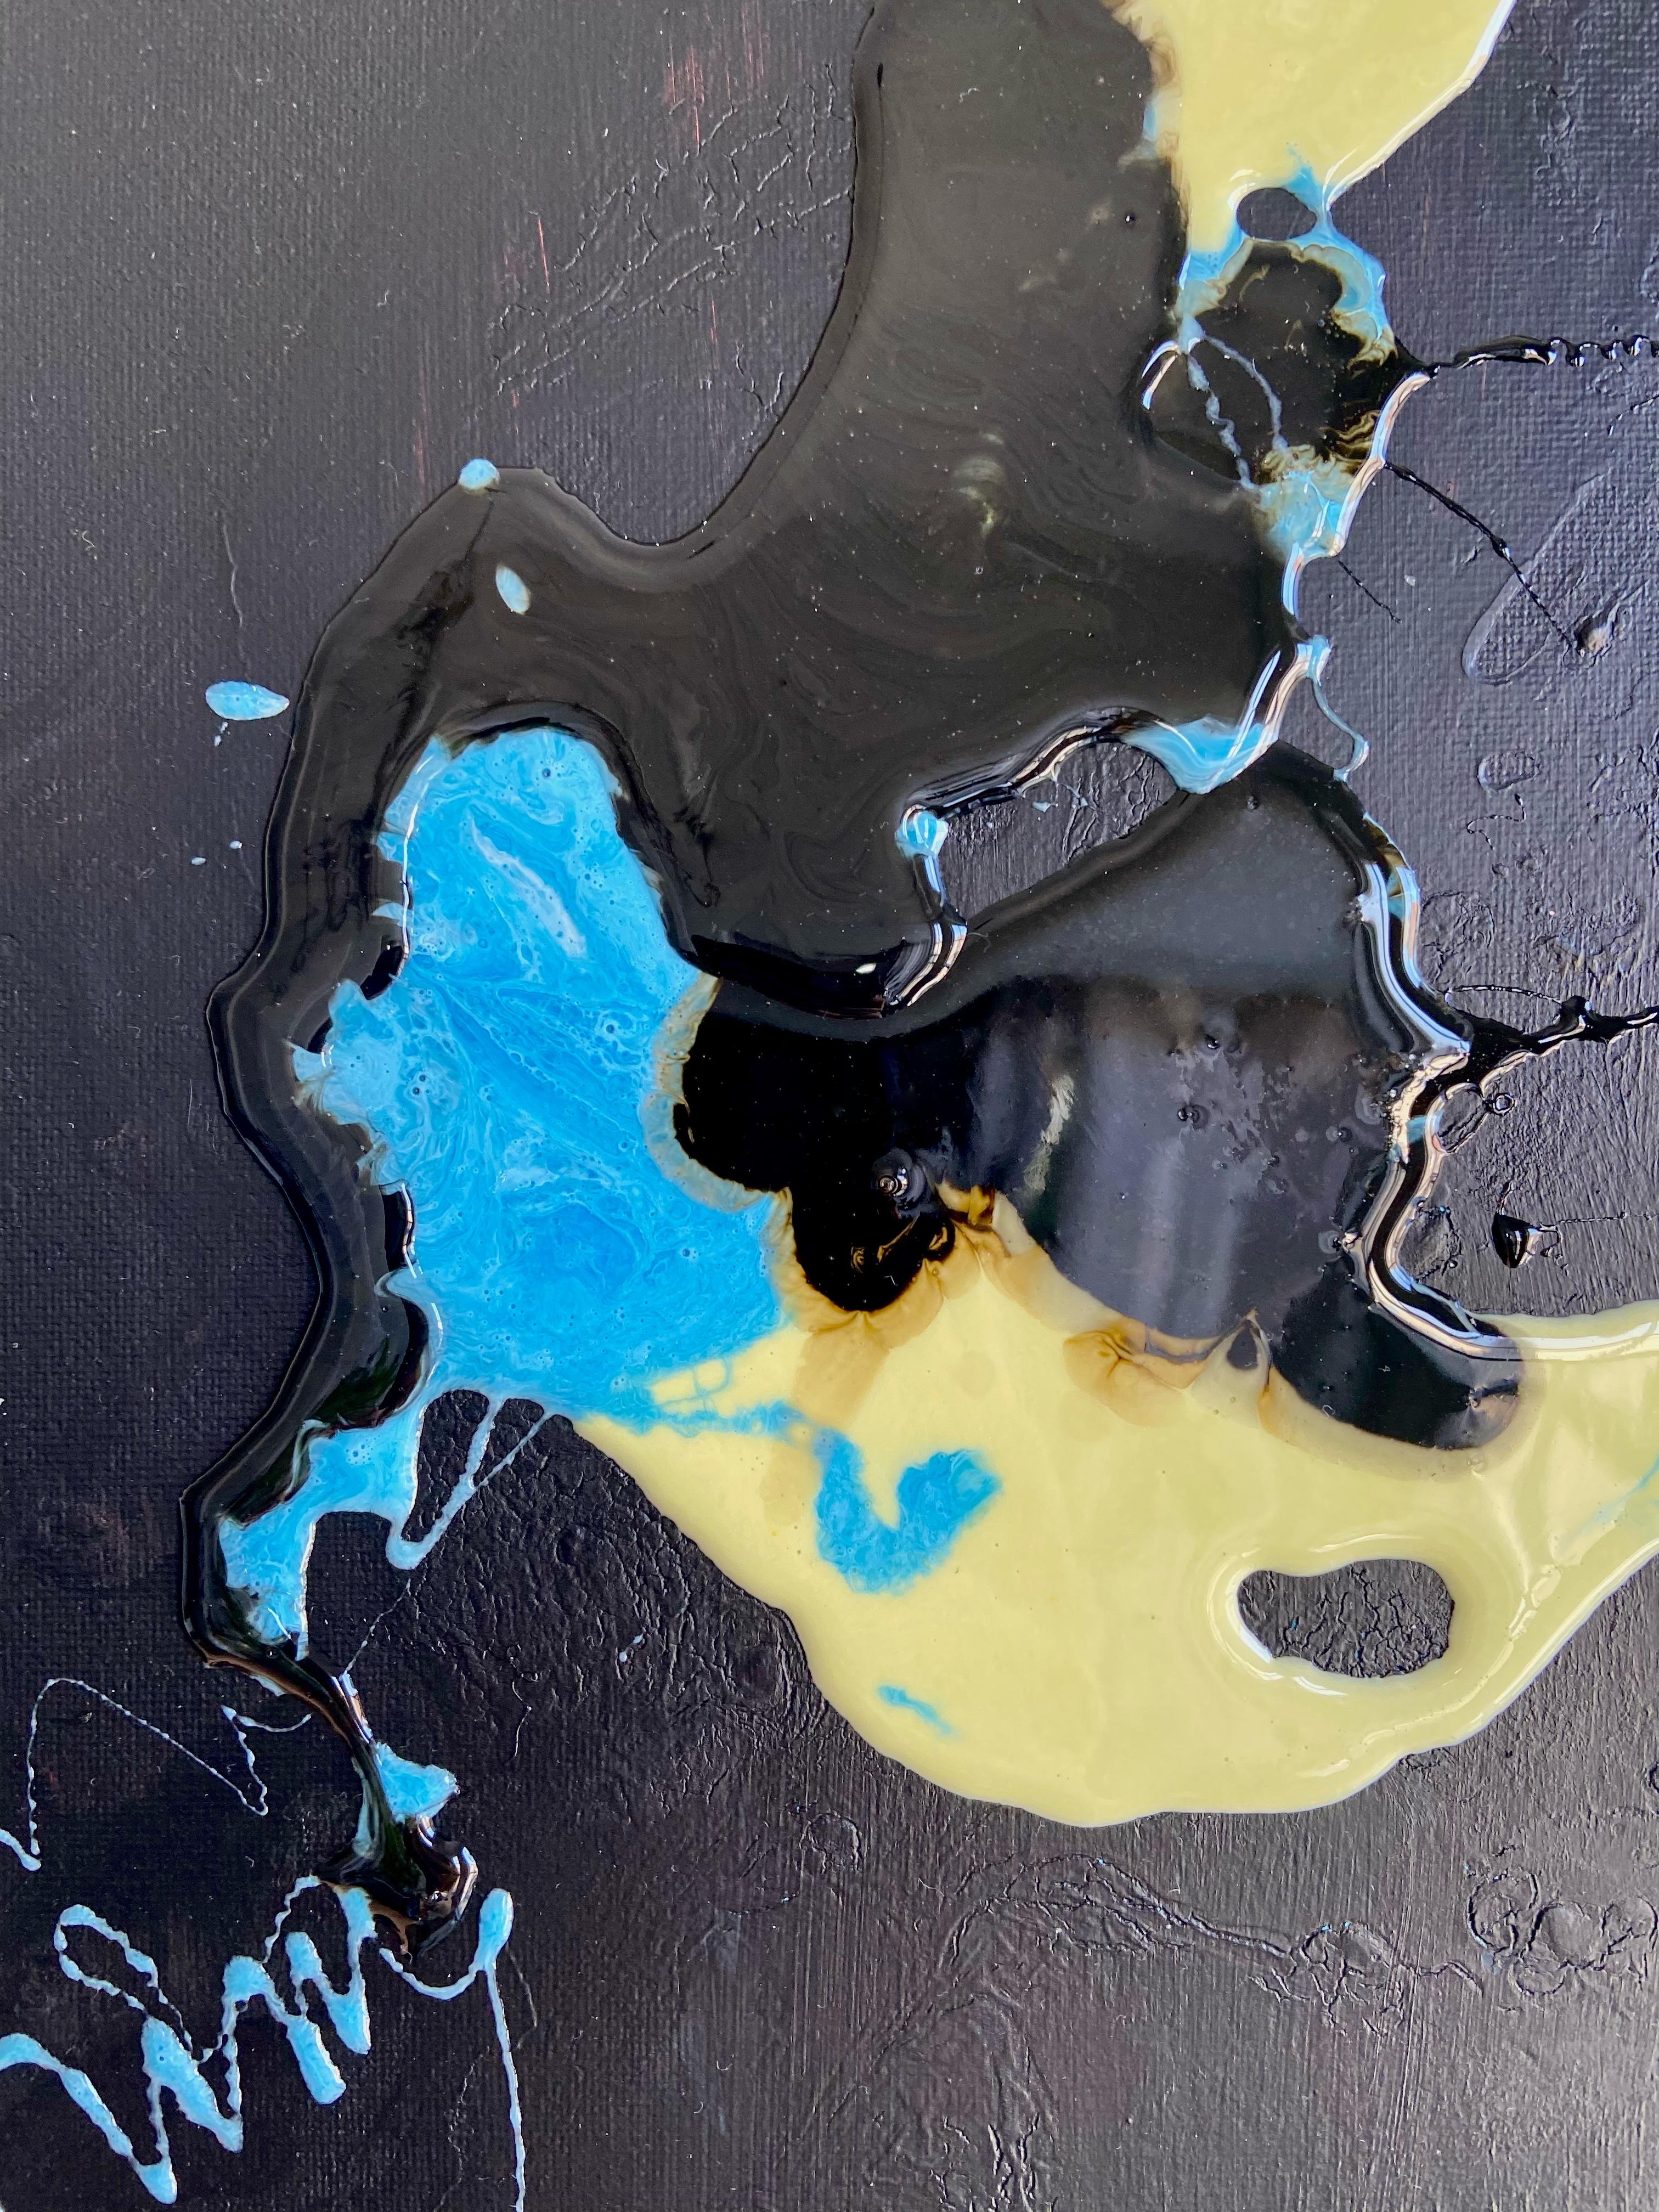 Face liquide - art d'abstraction réalisé en bleu, jaune, noir et blanc - Painting de Lena Cher